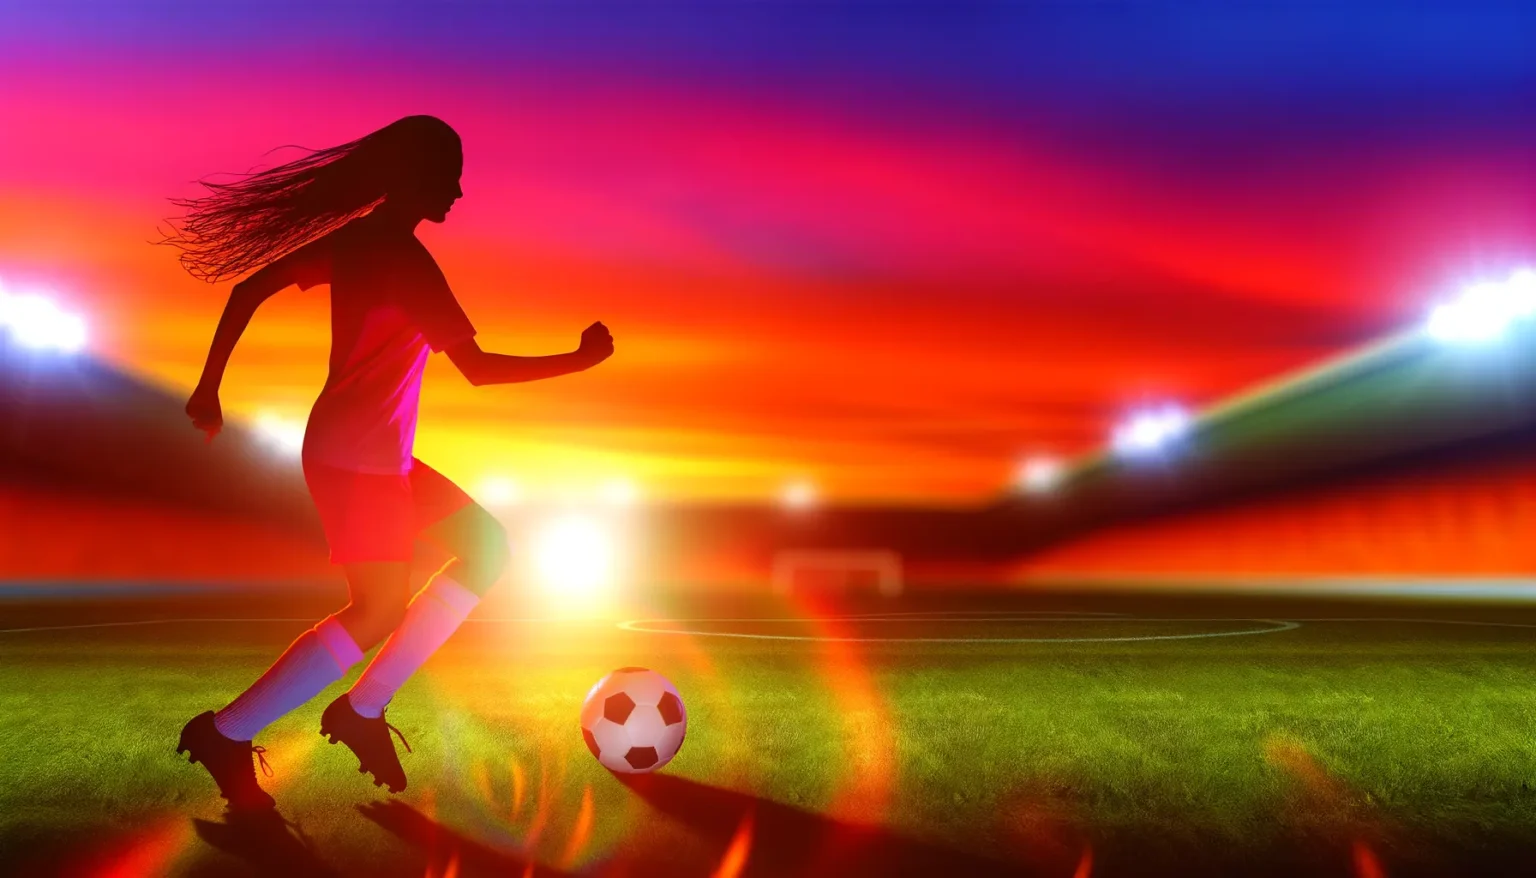 Eine weibliche Fußballspielerin im Trikot spielt mit einem Fußball auf einem Spielfeld, mit einem lebhaften, farbenfrohen Sonnenuntergangshimmel im Hintergrund und den Scheinwerfern eines Stadions, die das Feld erleuchten.